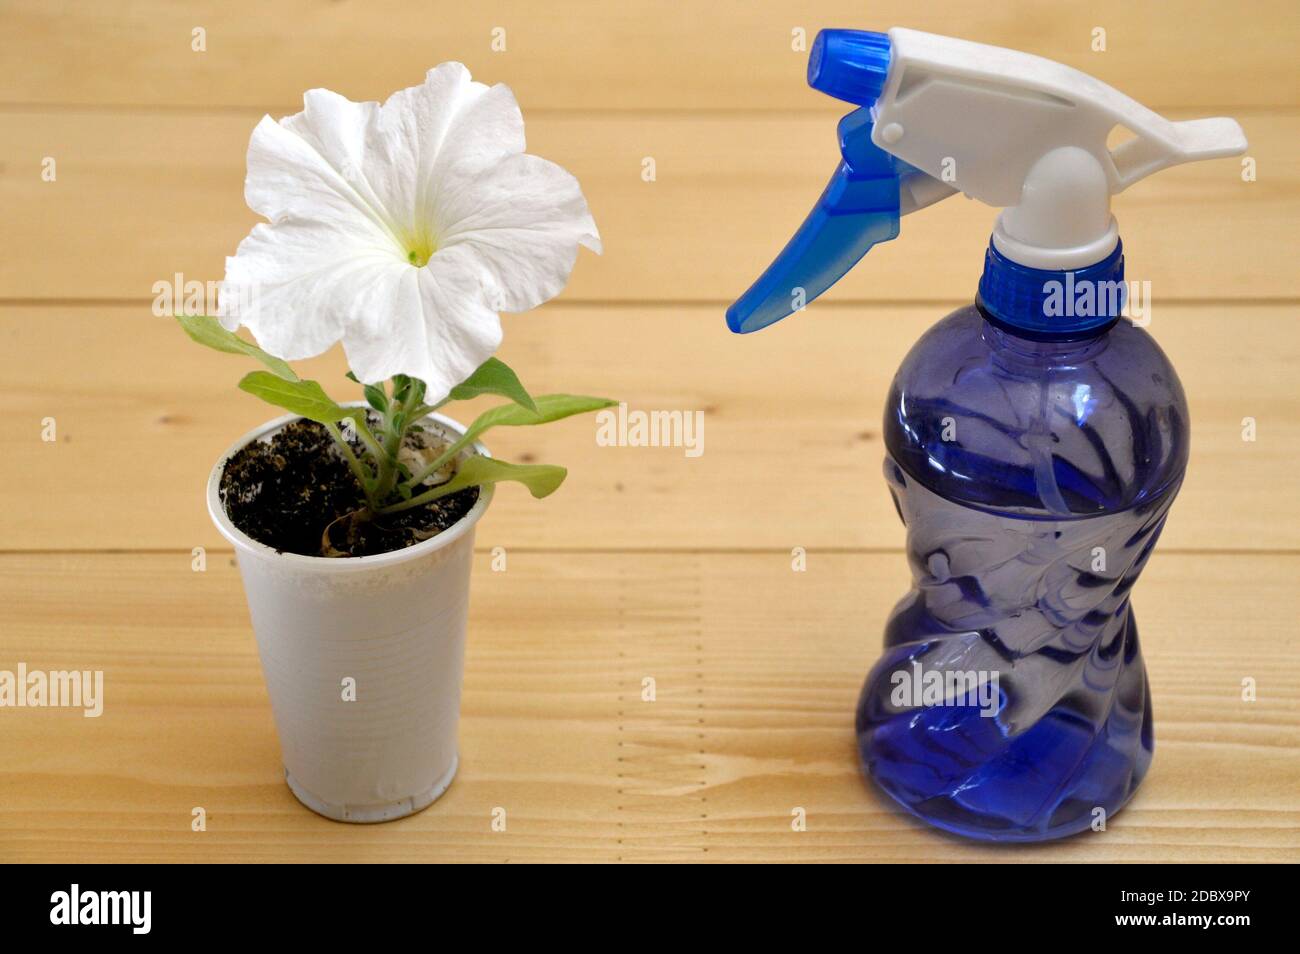 Weiße Petunia Blume wächst in einem Plastikbecher neben Blaue Flasche Spray auf Holztisch Stockfoto